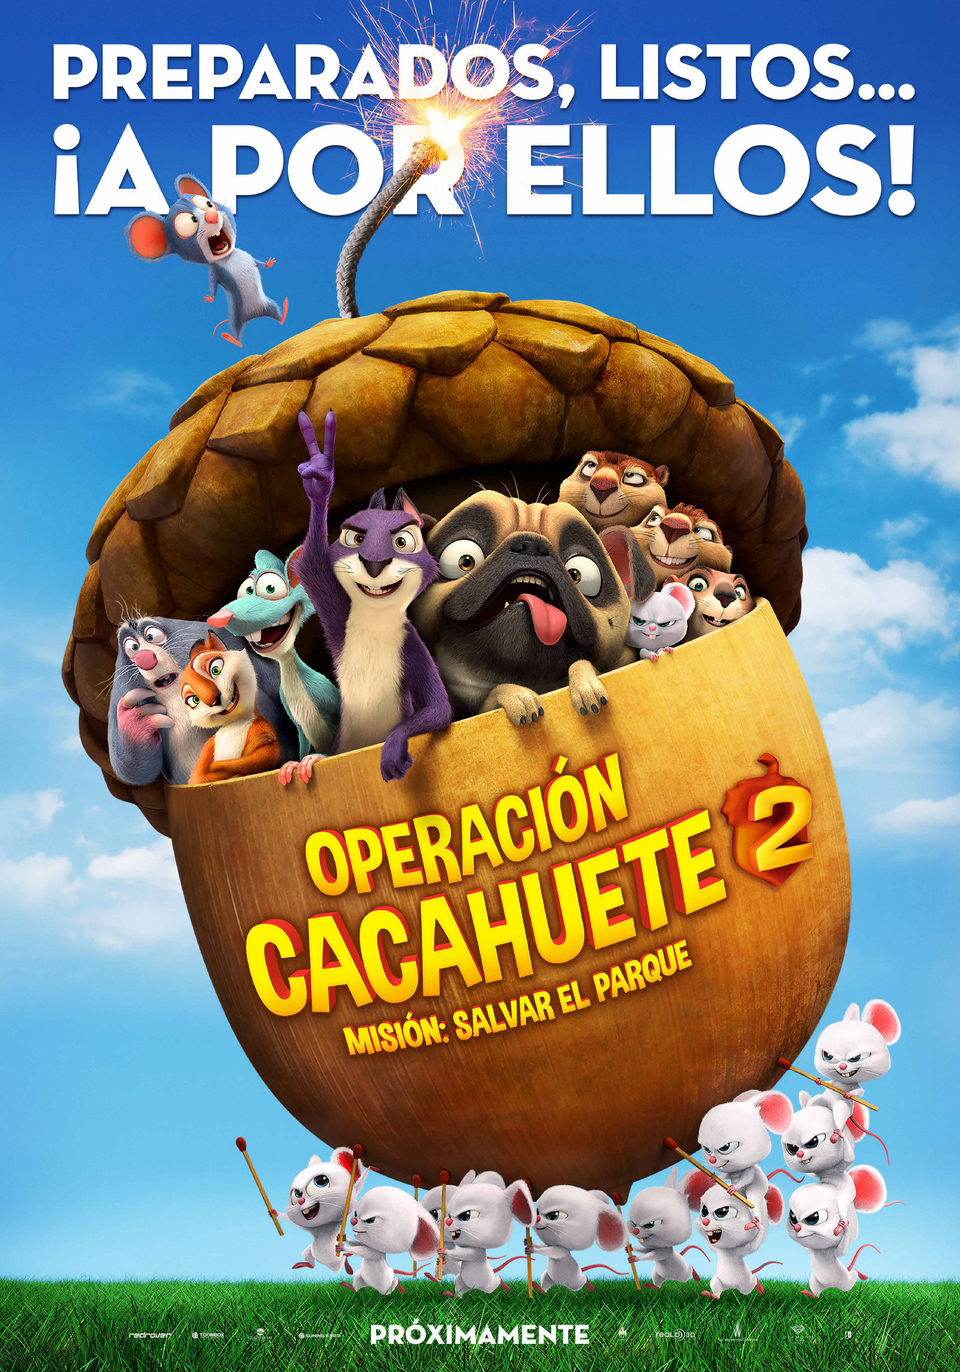 Cartel de Operación Cacahuete 2. Misión: Salvar el parque - España